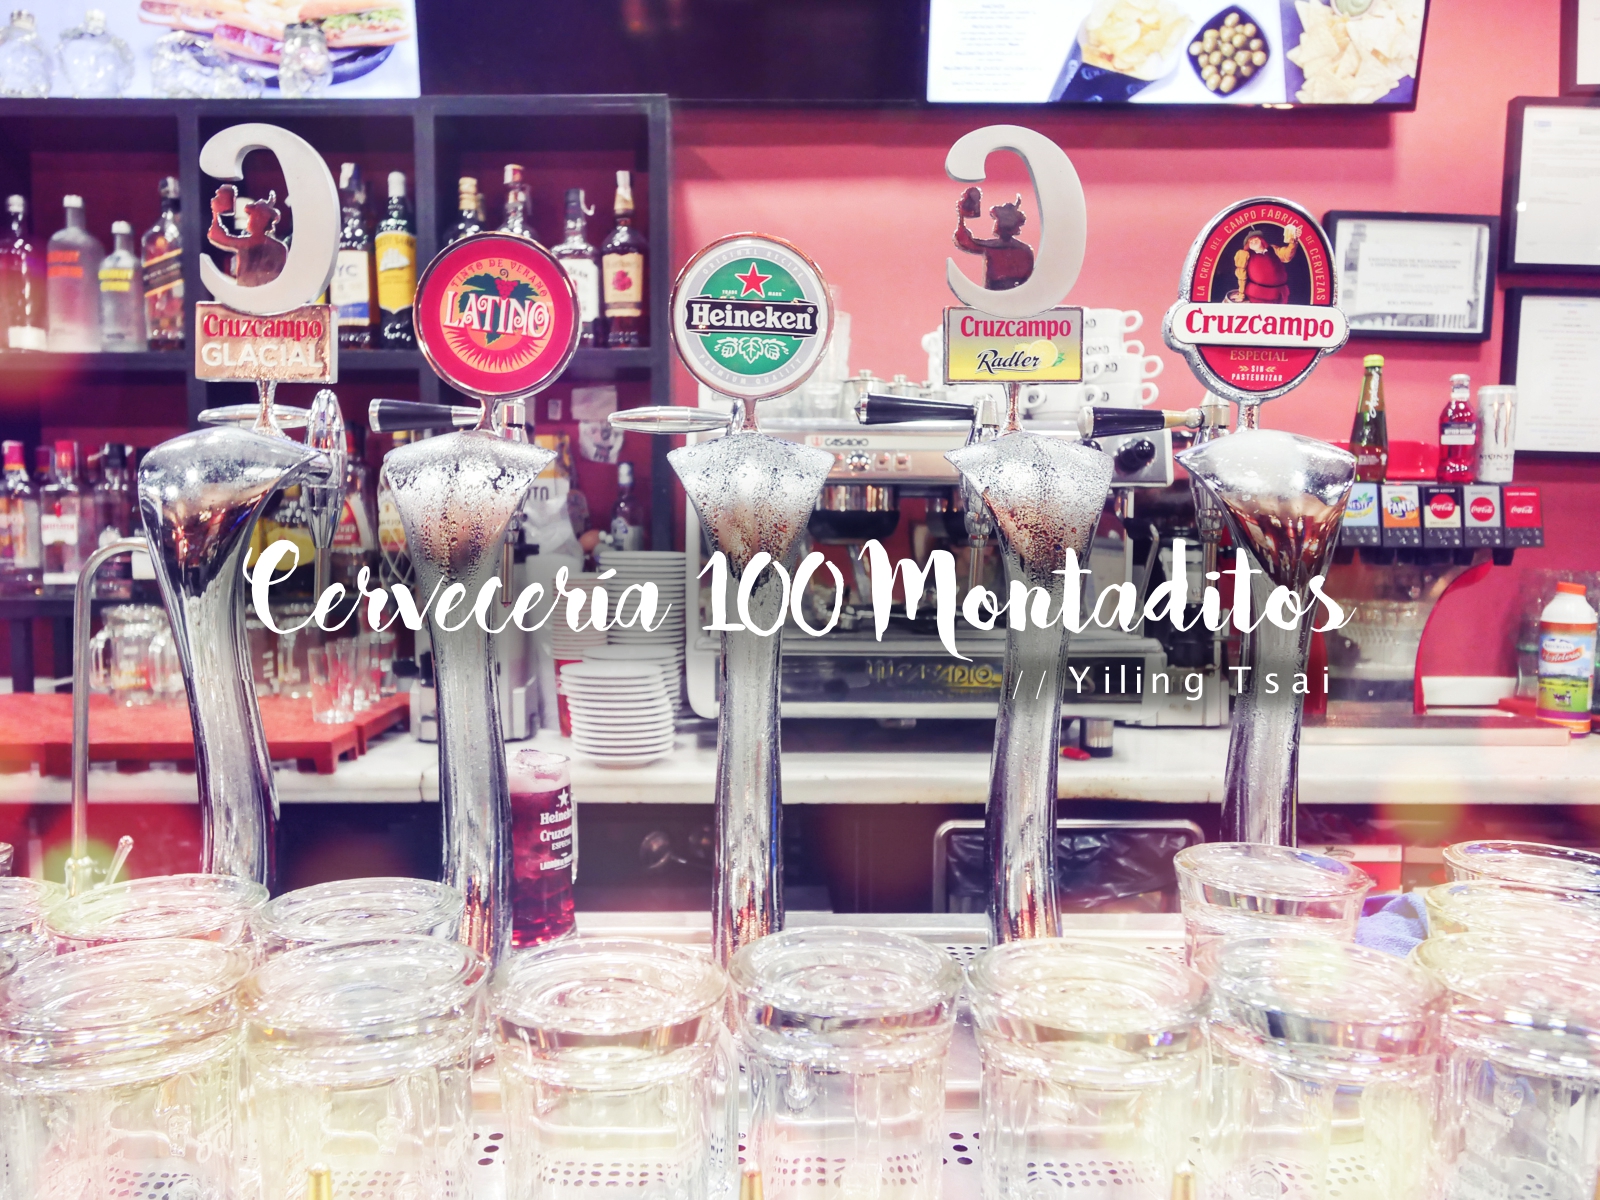 西班牙馬德里美食推薦 Cervecería 100 Montaditos 一歐 Tapas 平價好料